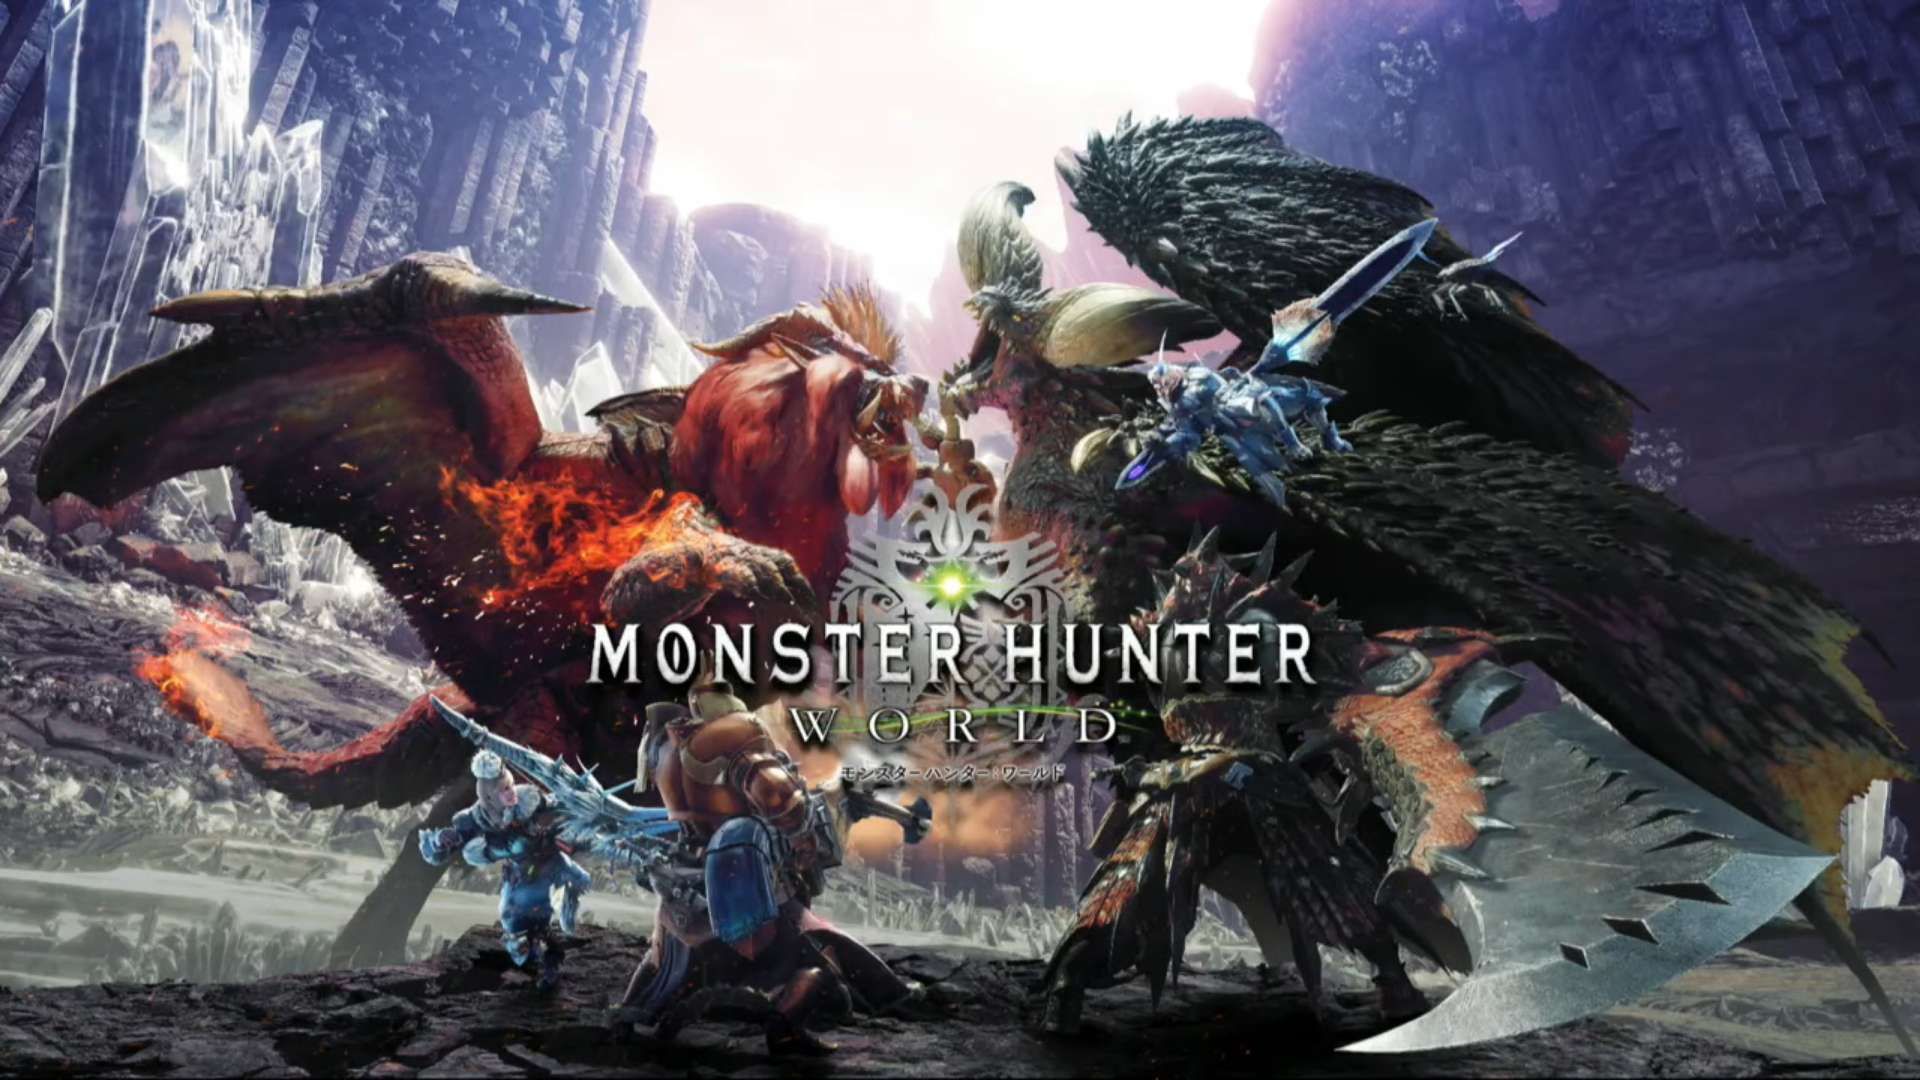 Should I get Monster Hunter World, or Dark Souls Remastered